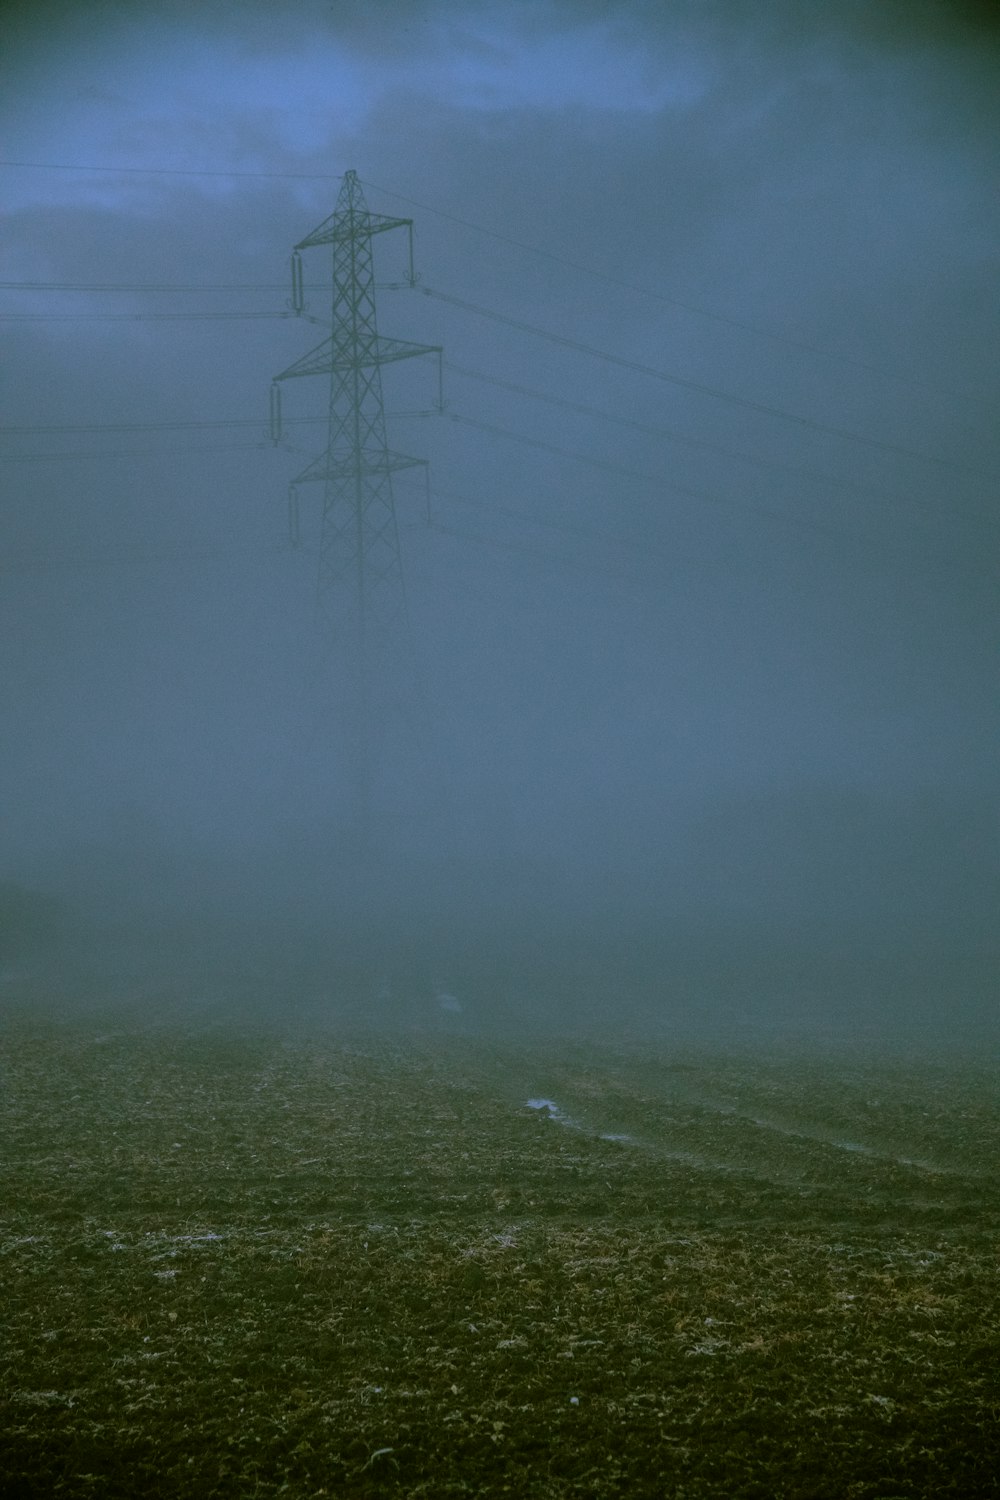 Torre de transformadores cubierta por niebla